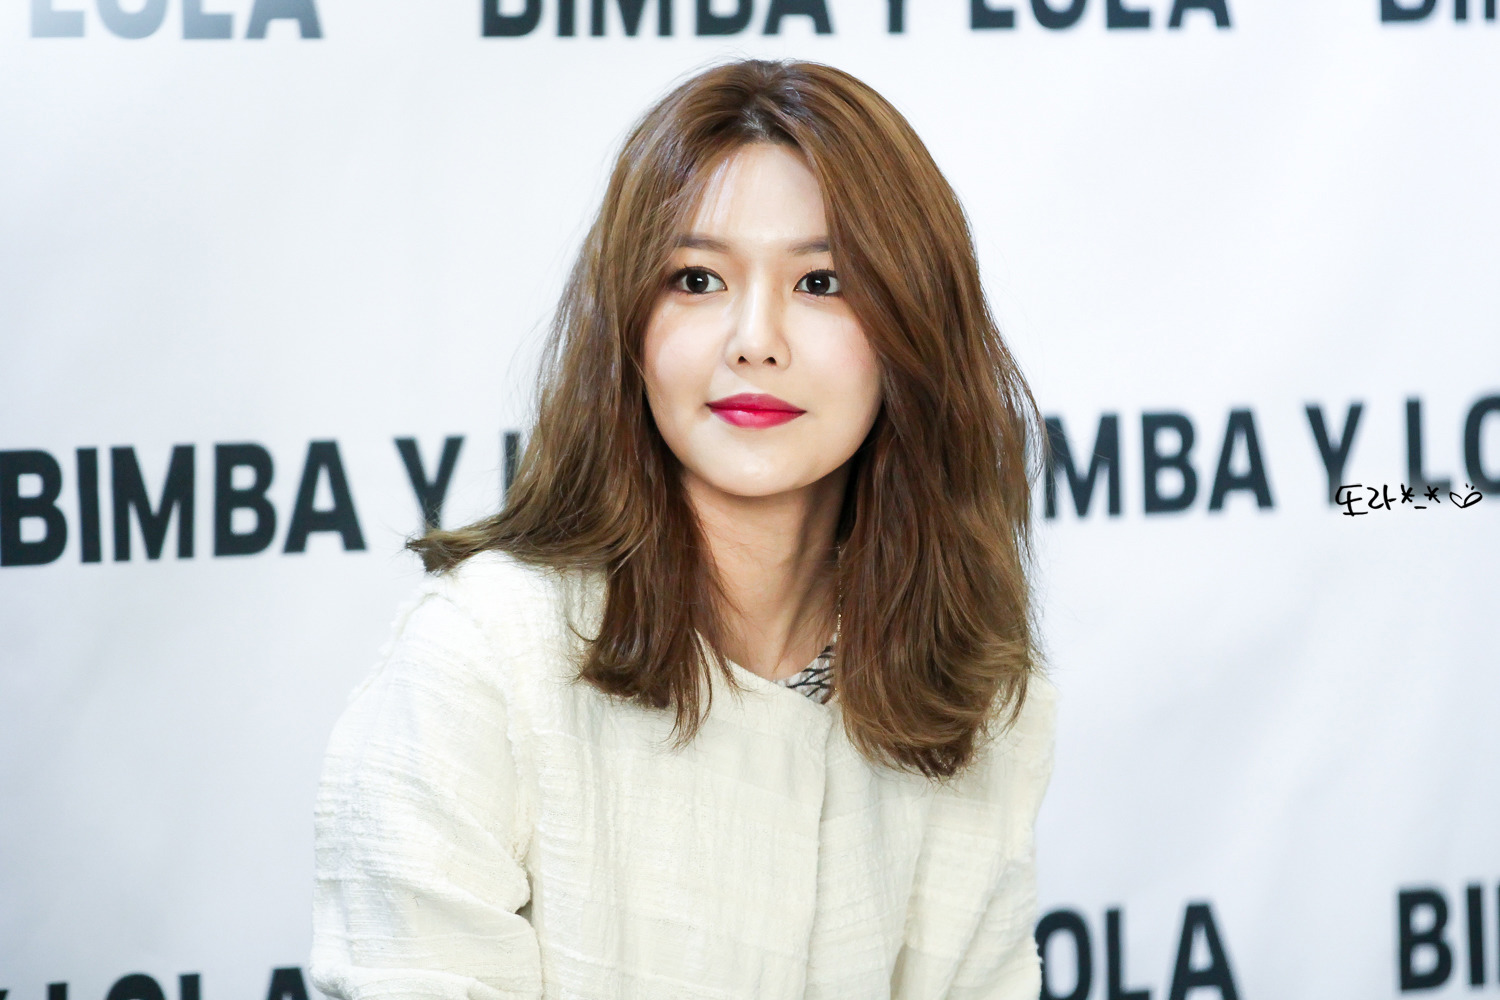 [PIC][10-03-2017]SooYoung tham dự buổi Fansign cho dòng thời trang "BIMBA Y LOLA" tại Lotte Department Store vào chiều nay - Page 3 2514103F590C73EB1B52F6